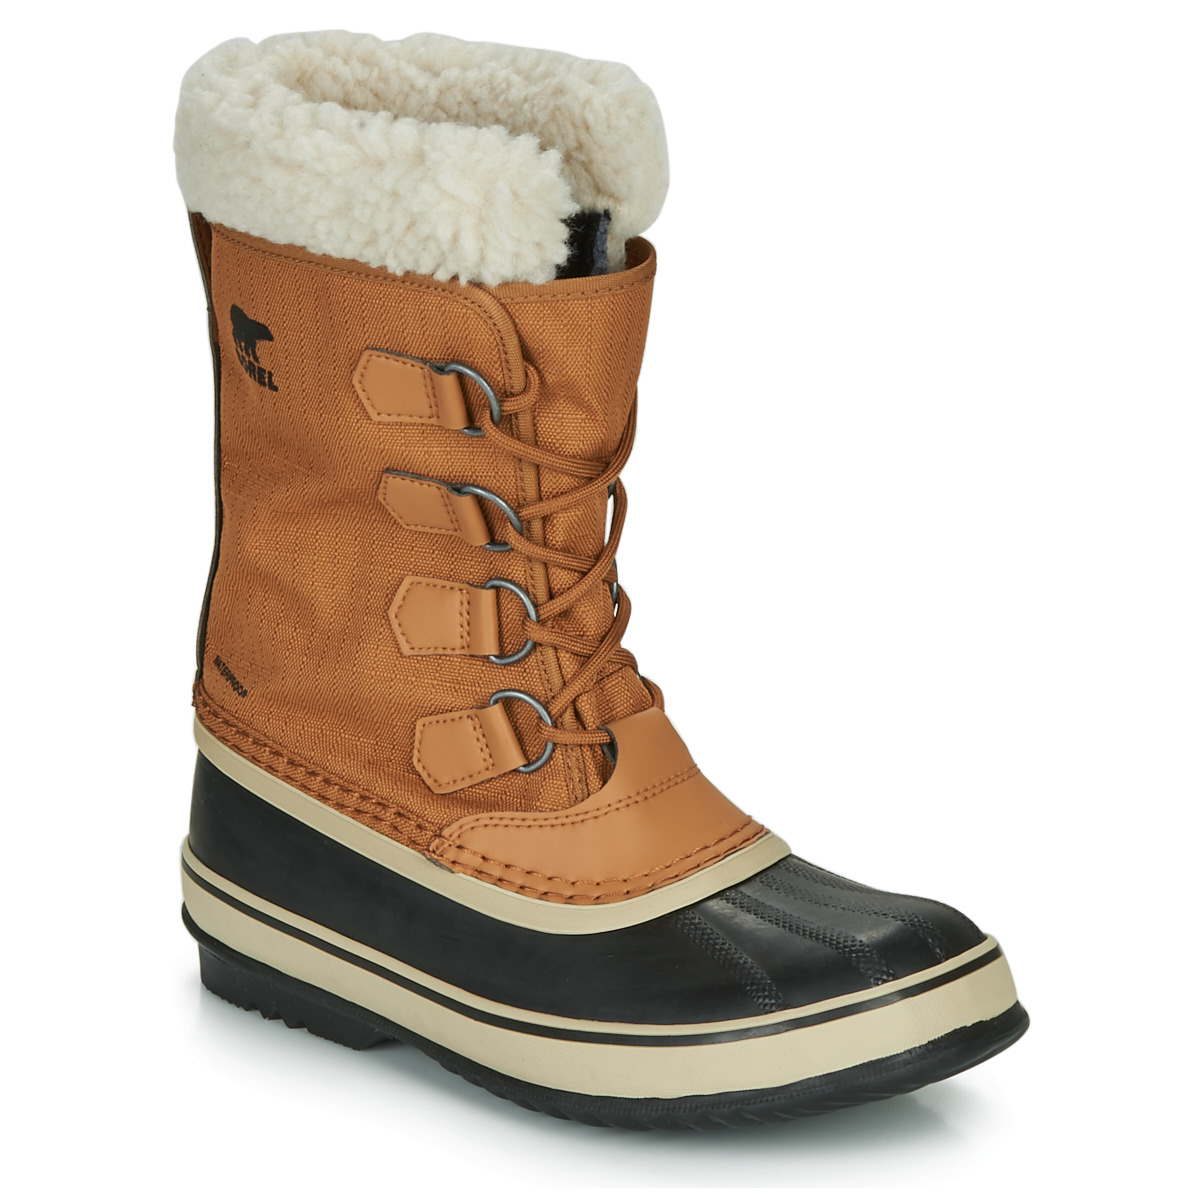 Παπούτσια Γυναίκα Snow boots Sorel WINTER CARNIVAL Camel